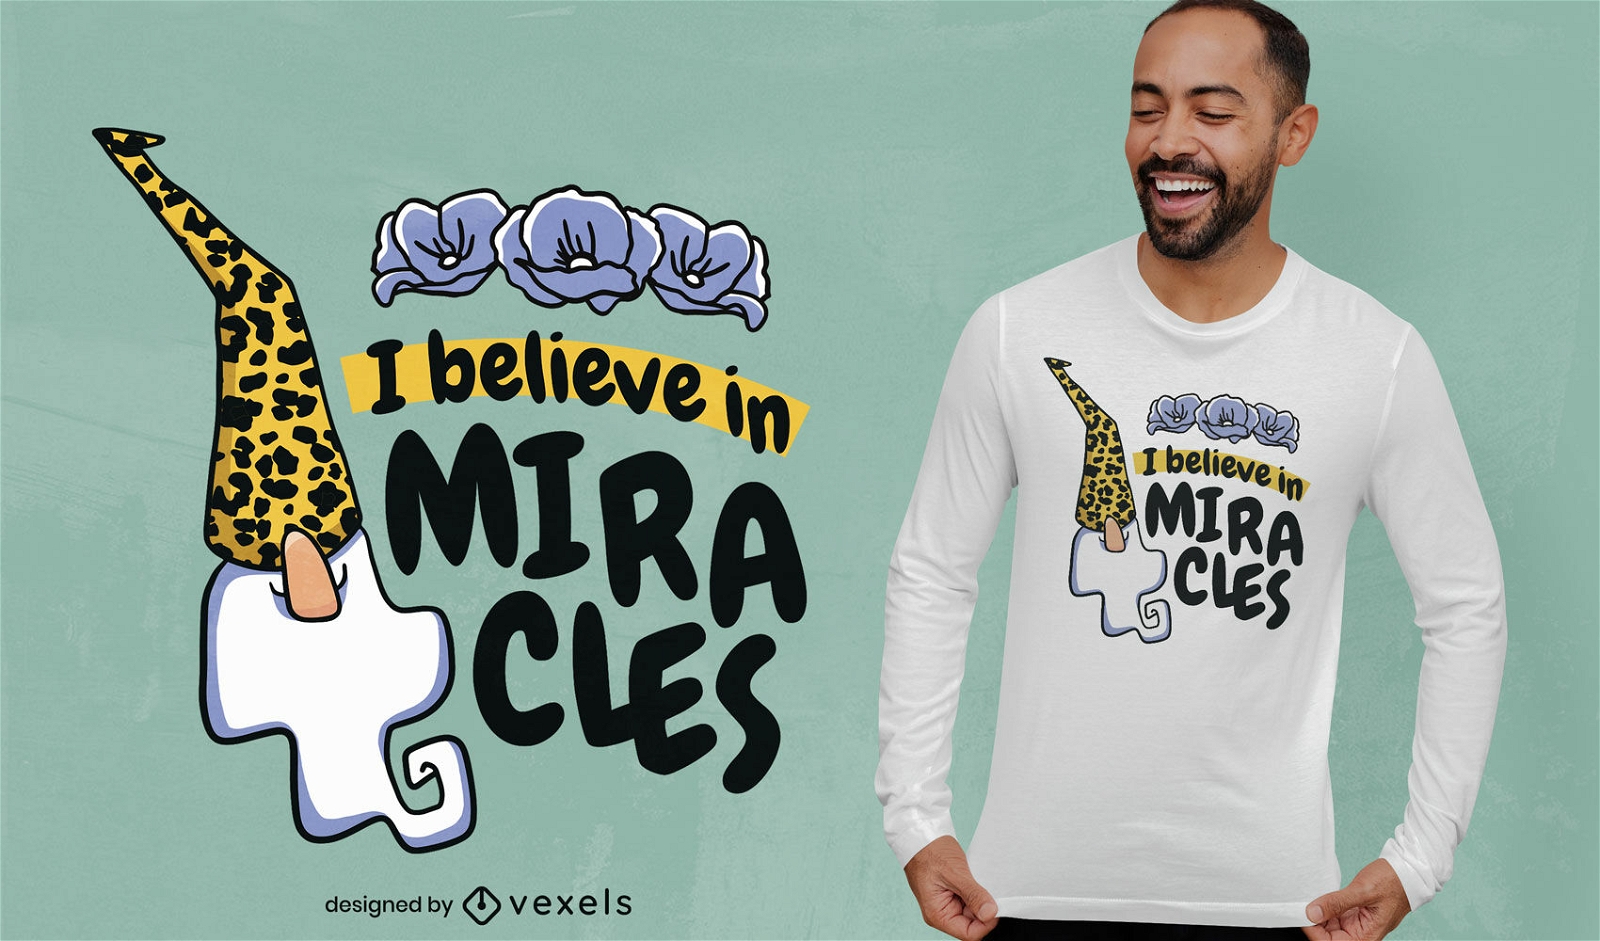 Cree en el dise?o de la camiseta de los milagros.